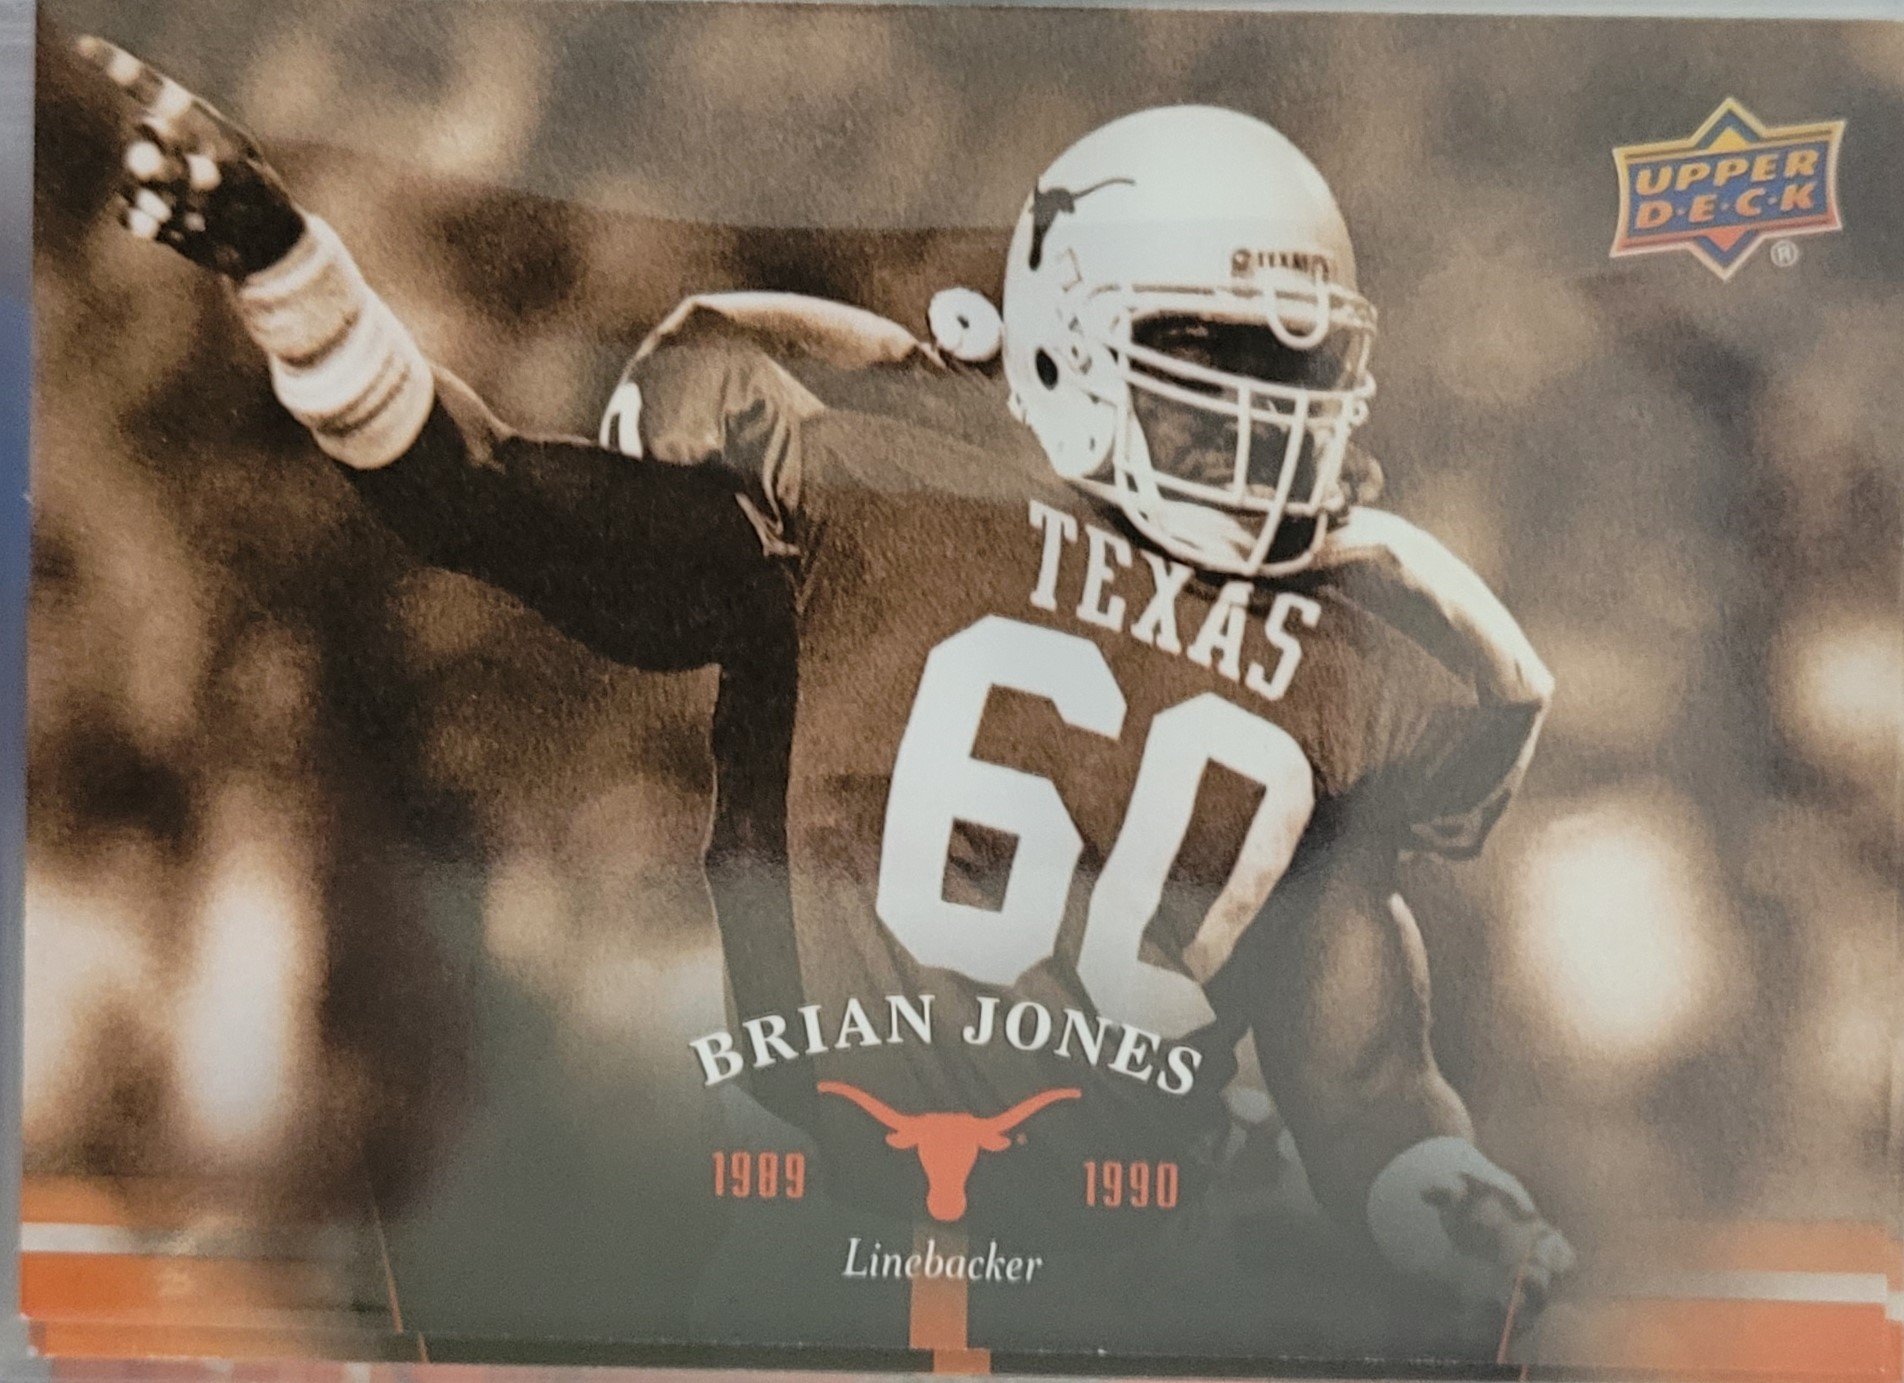 1989 Brian Jones